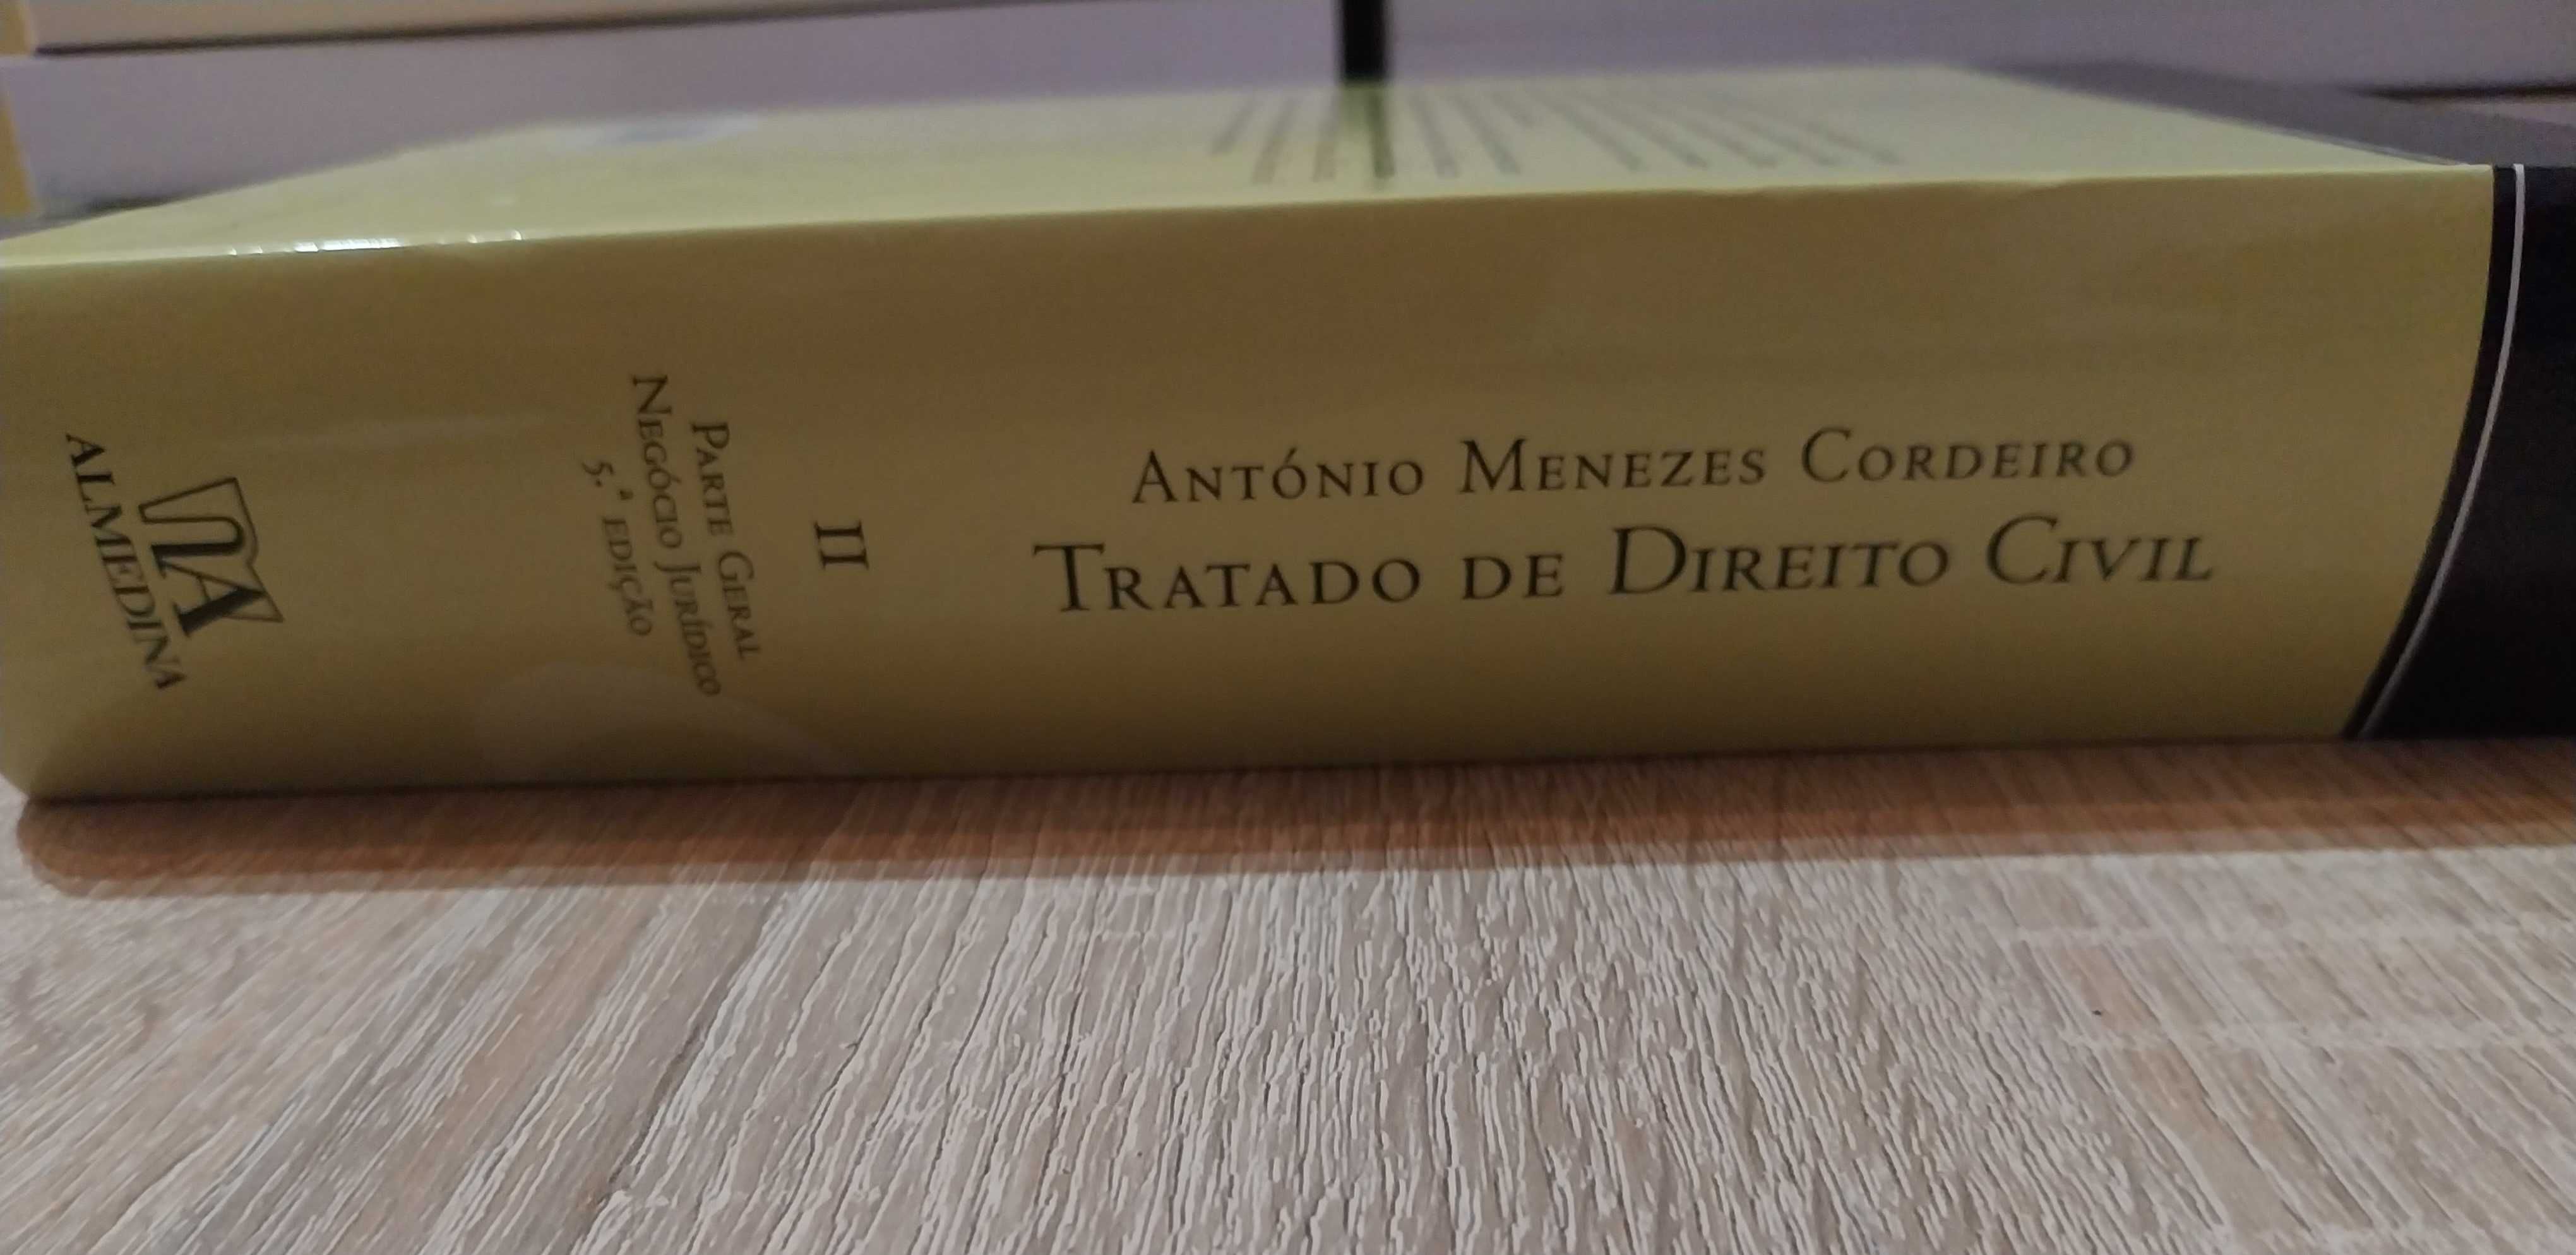 Livro Tratado de Direito Civil - António Menezes Cordeiro - Tomo II